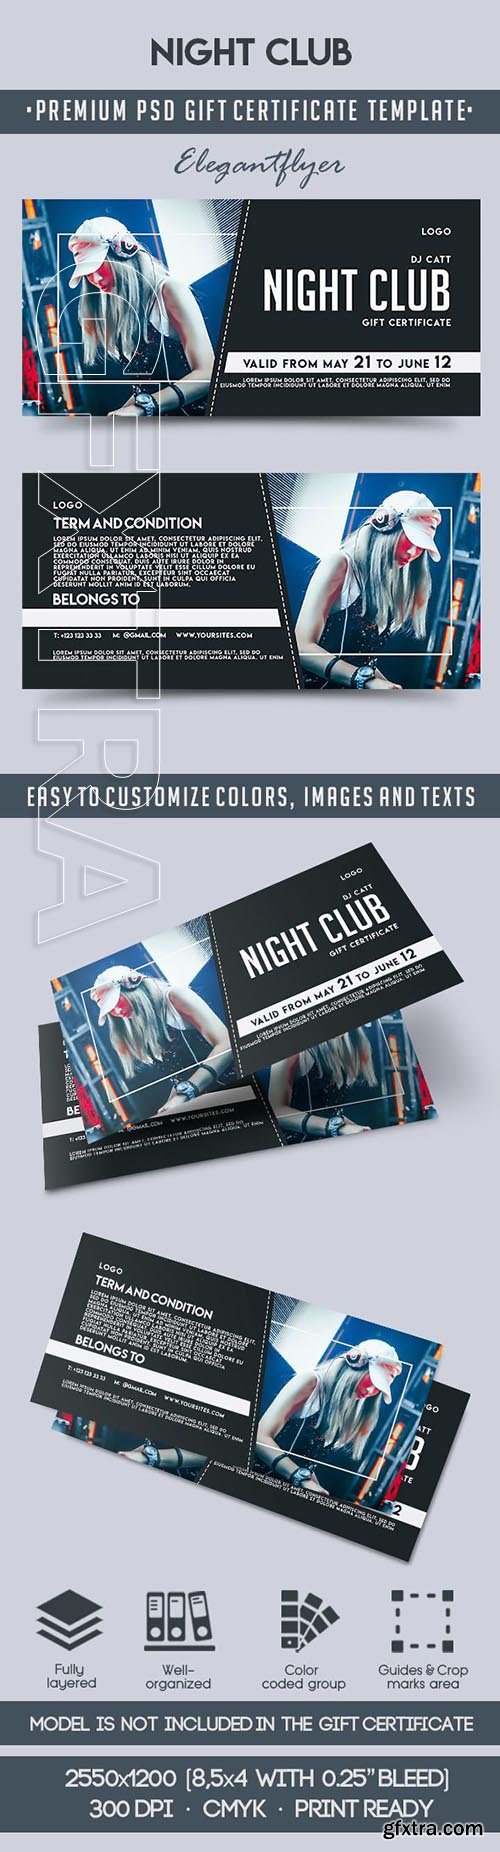 Night Club – Premium Gift Certificate PSD Template